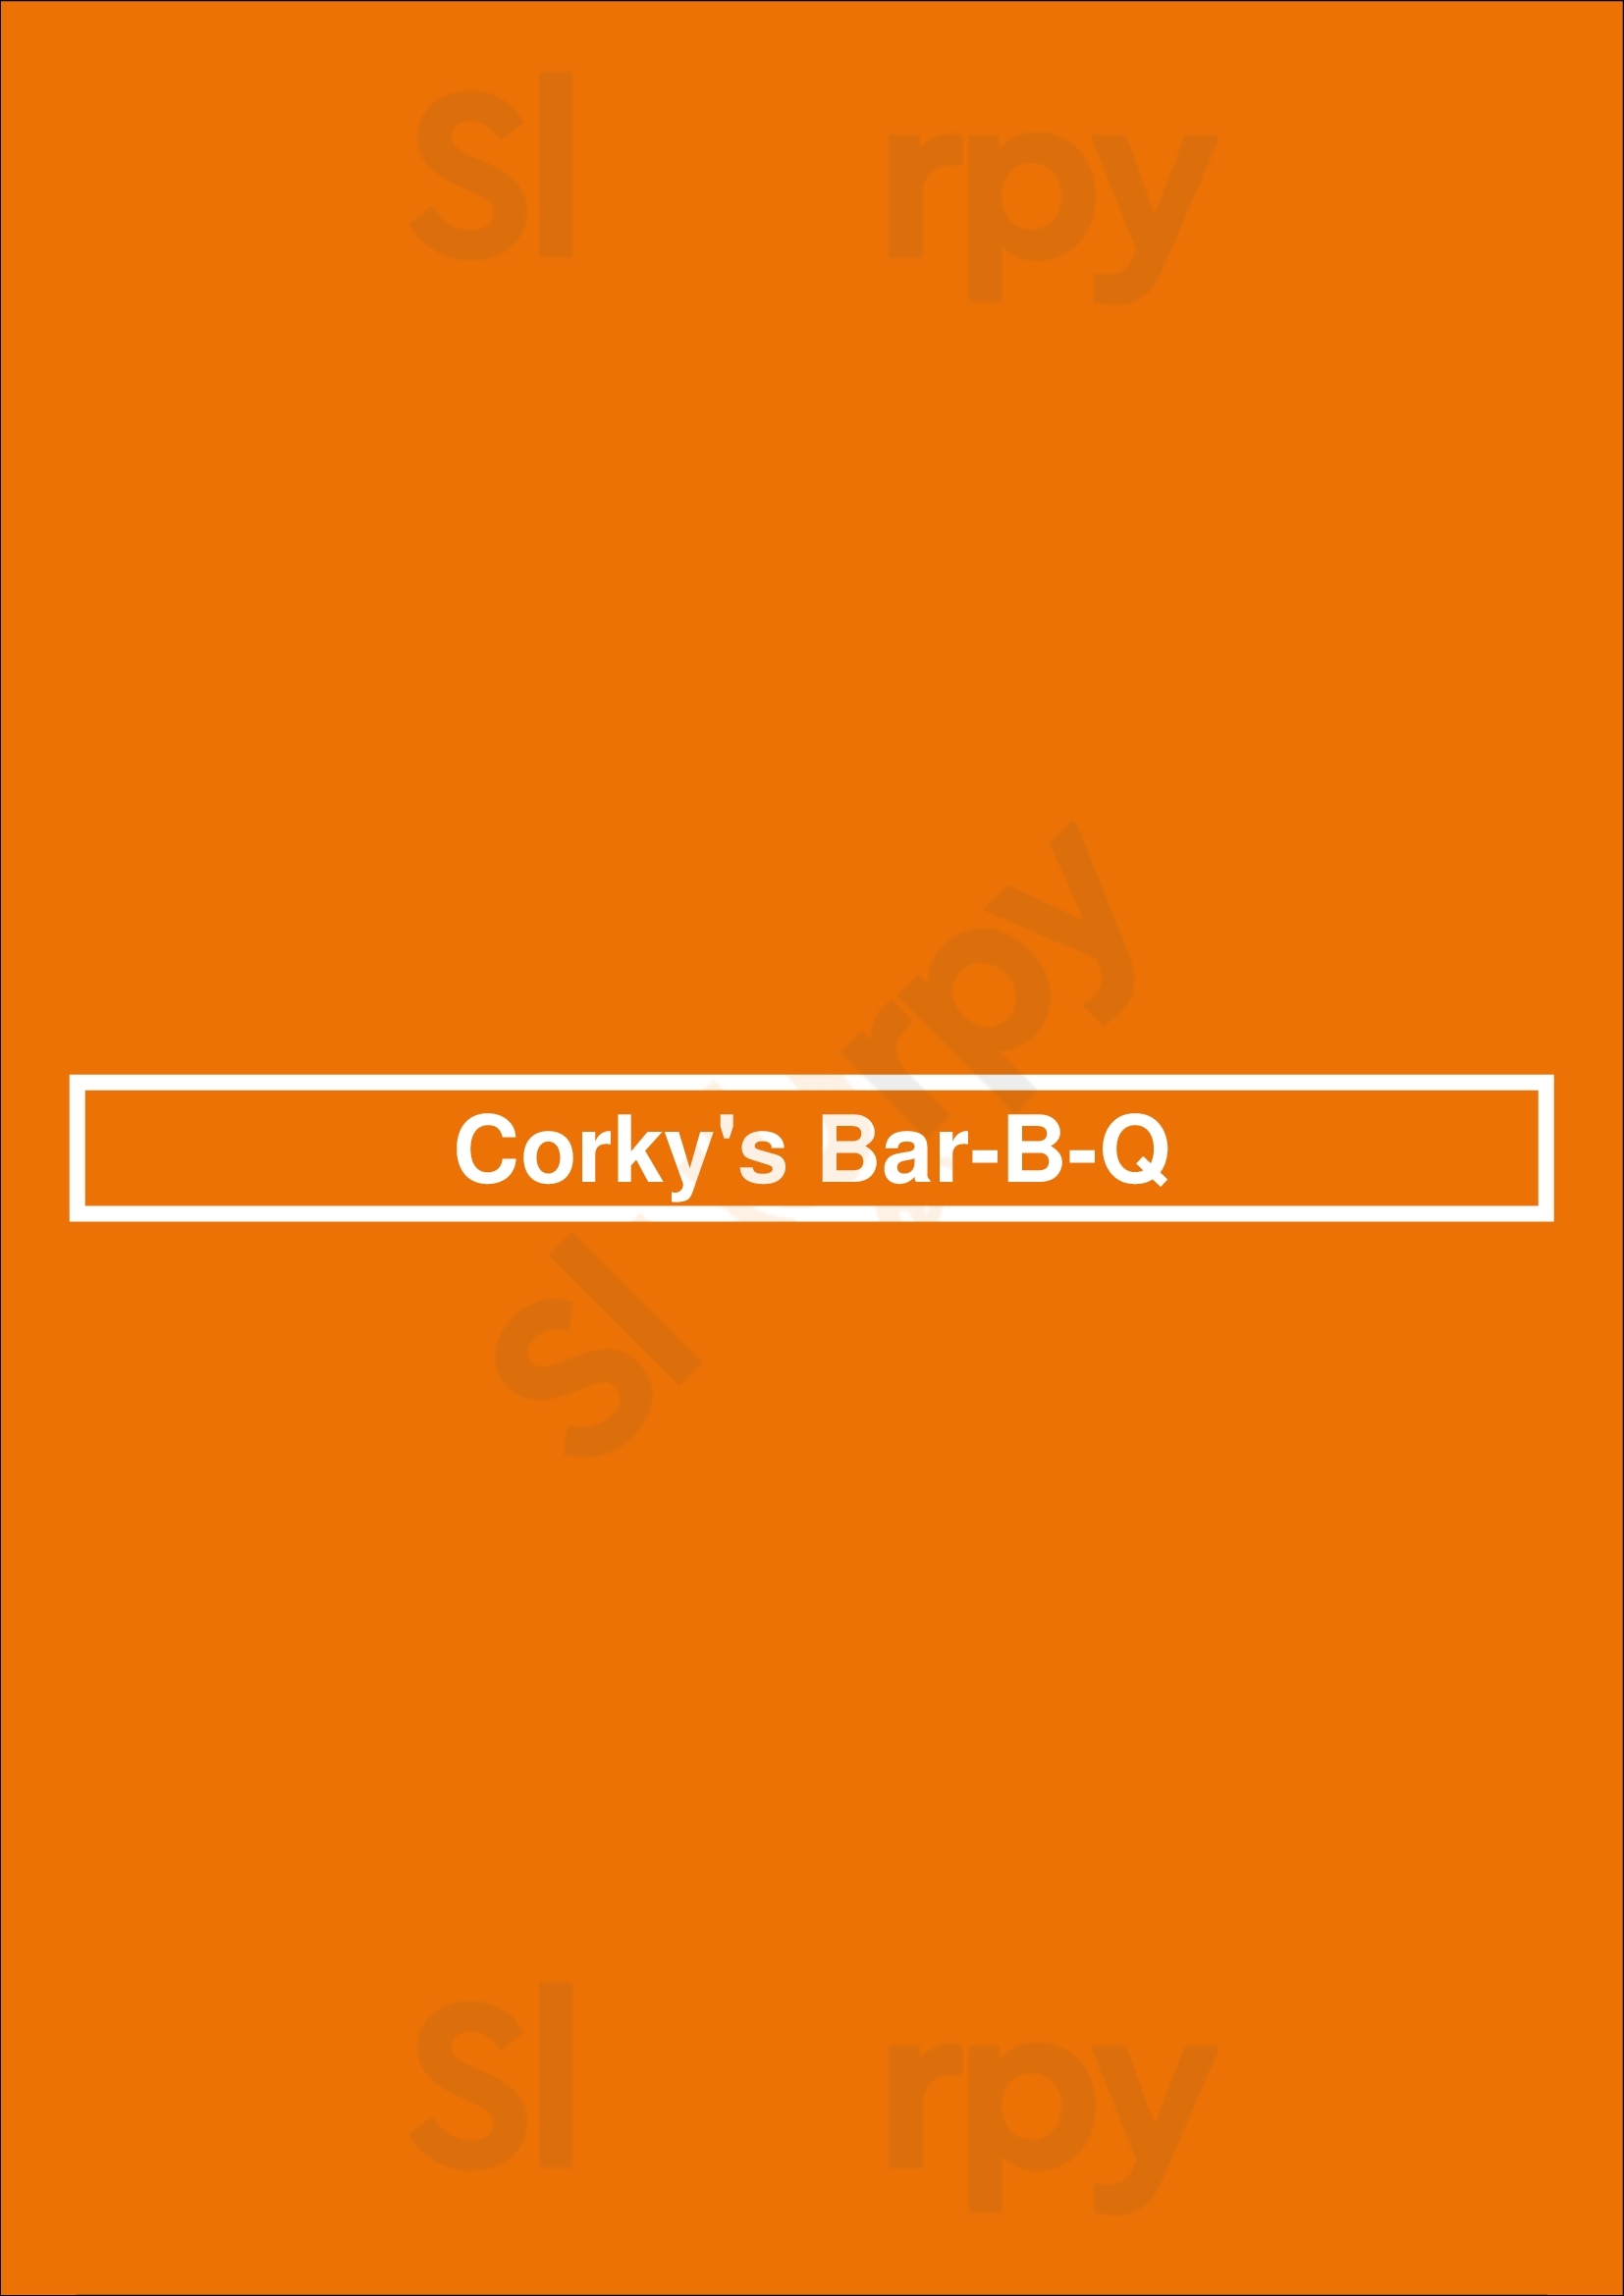 Corky's Bar-b-q Collierville Menu - 1